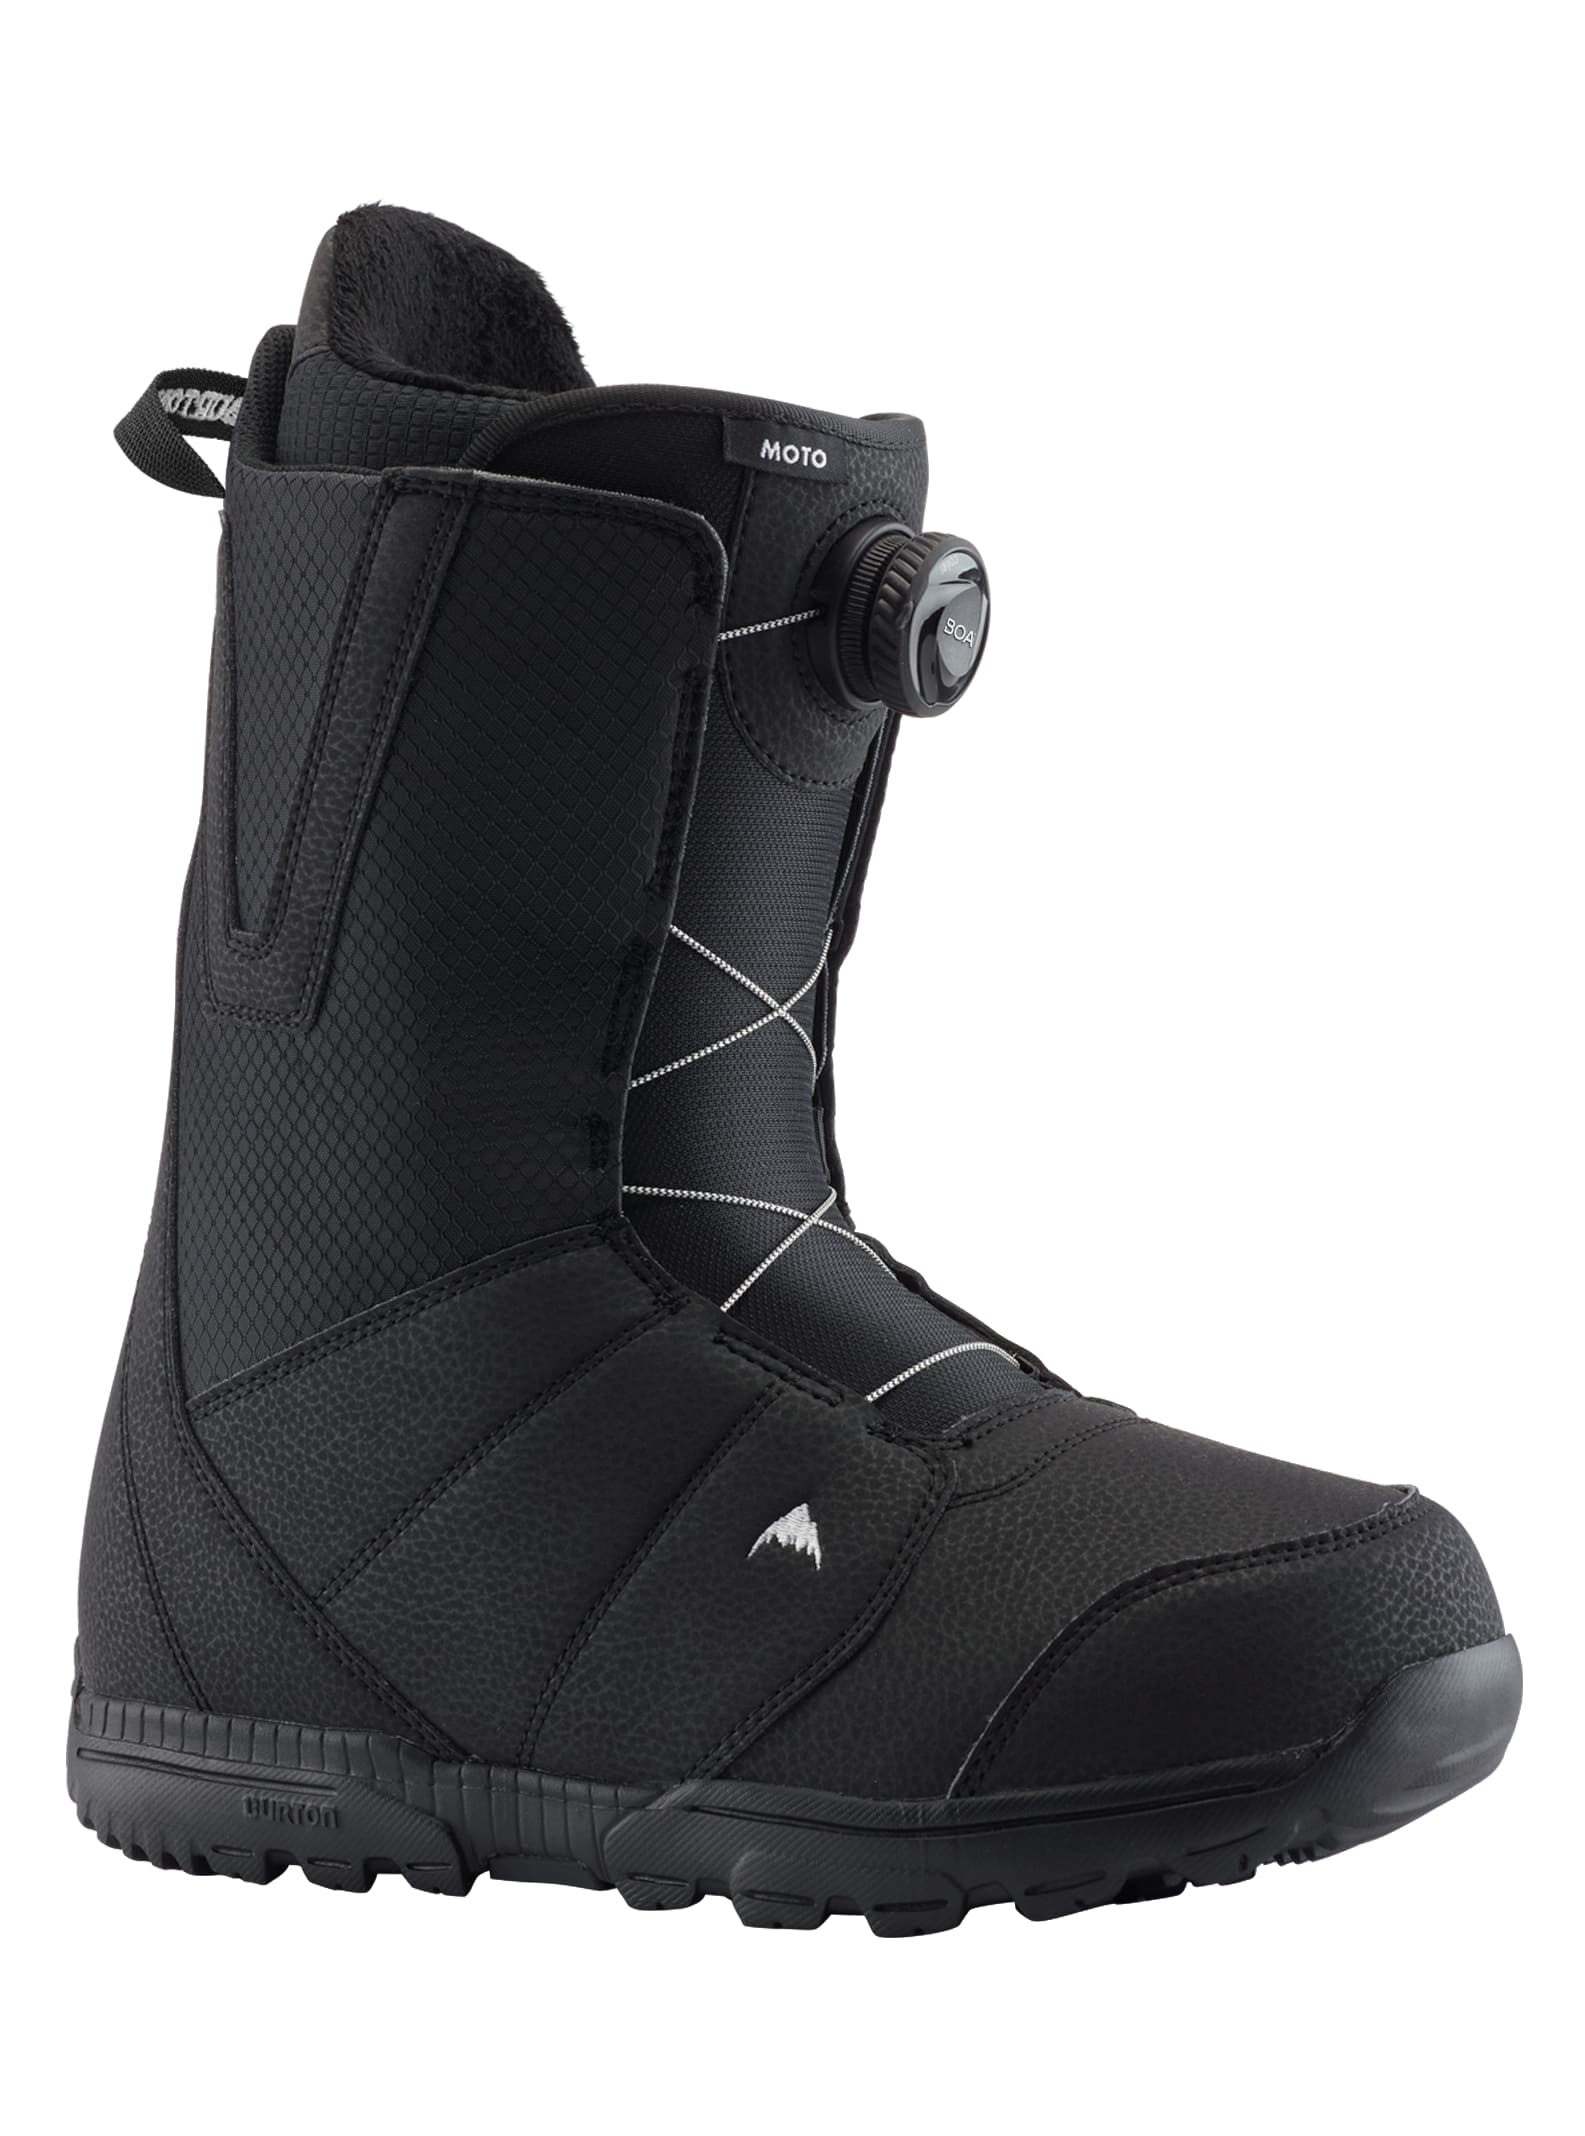 Men's Snowboard Boots | Burton Snowboards ES